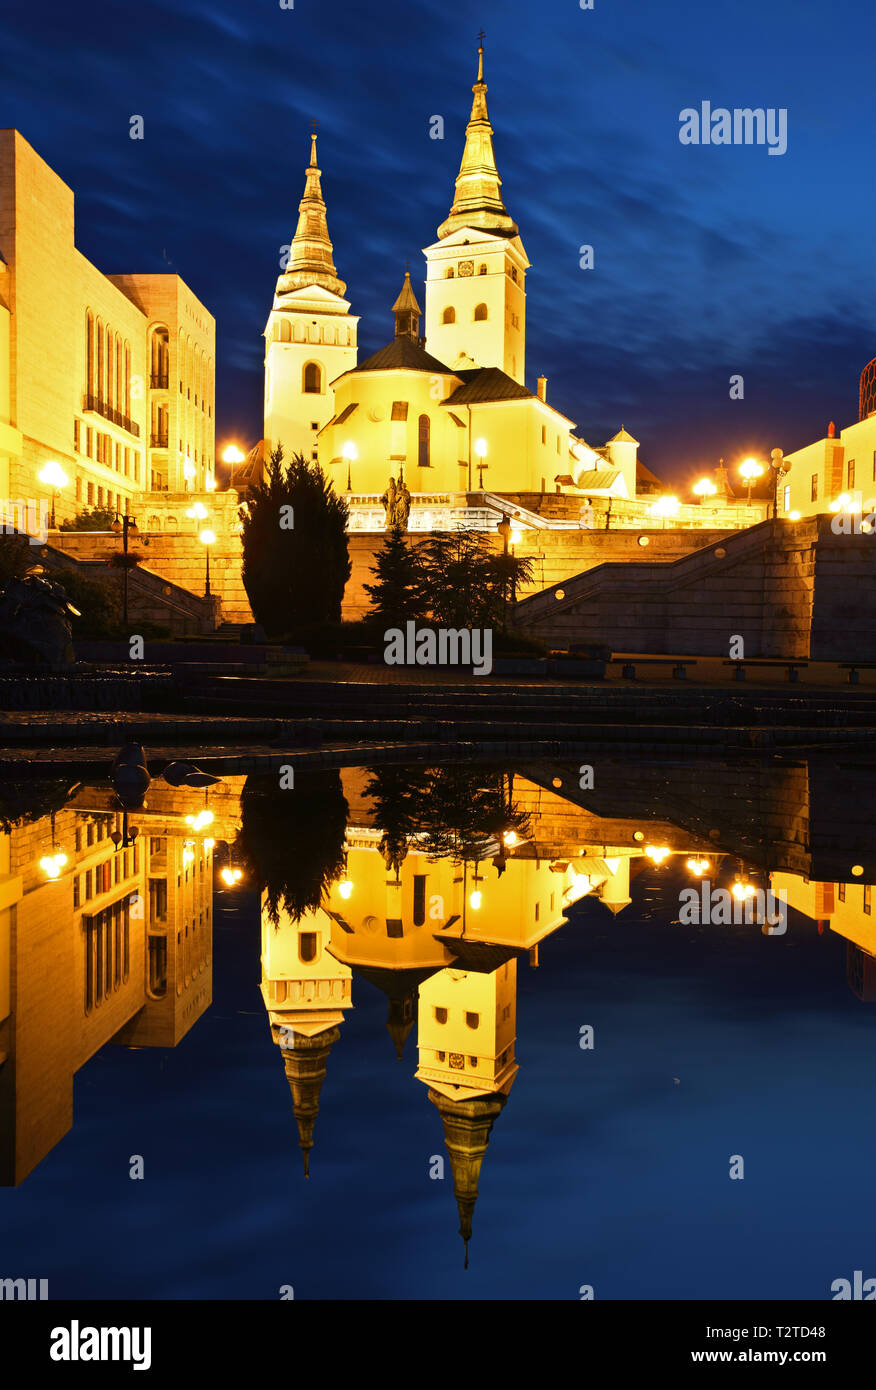 Zilina - Trinity Cathedral, Slovakia at night Stock Photo